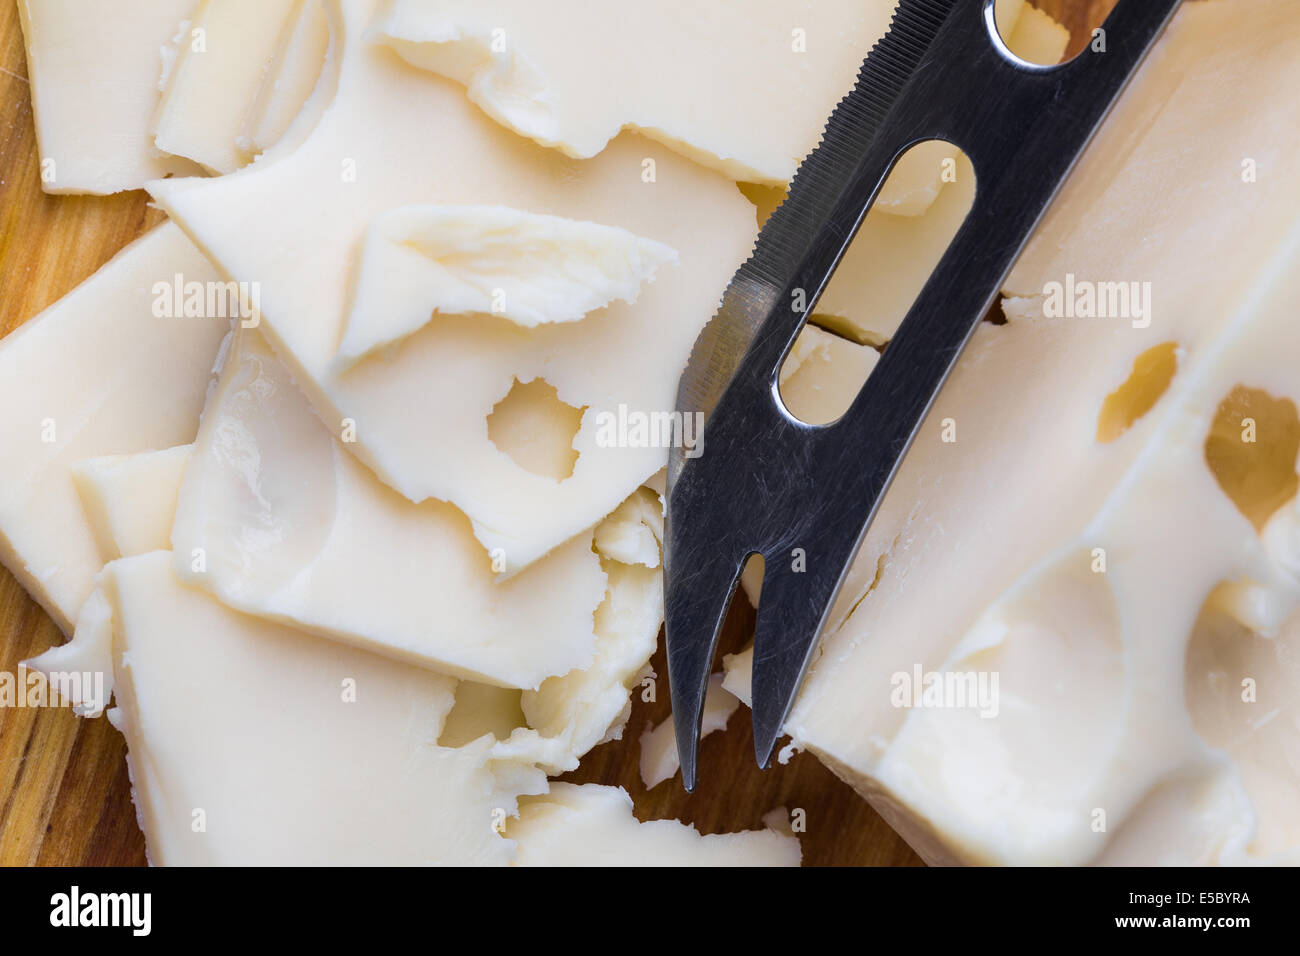 Tranches de fromage blanc maasdam avec couteau sur sol en bois Banque D'Images